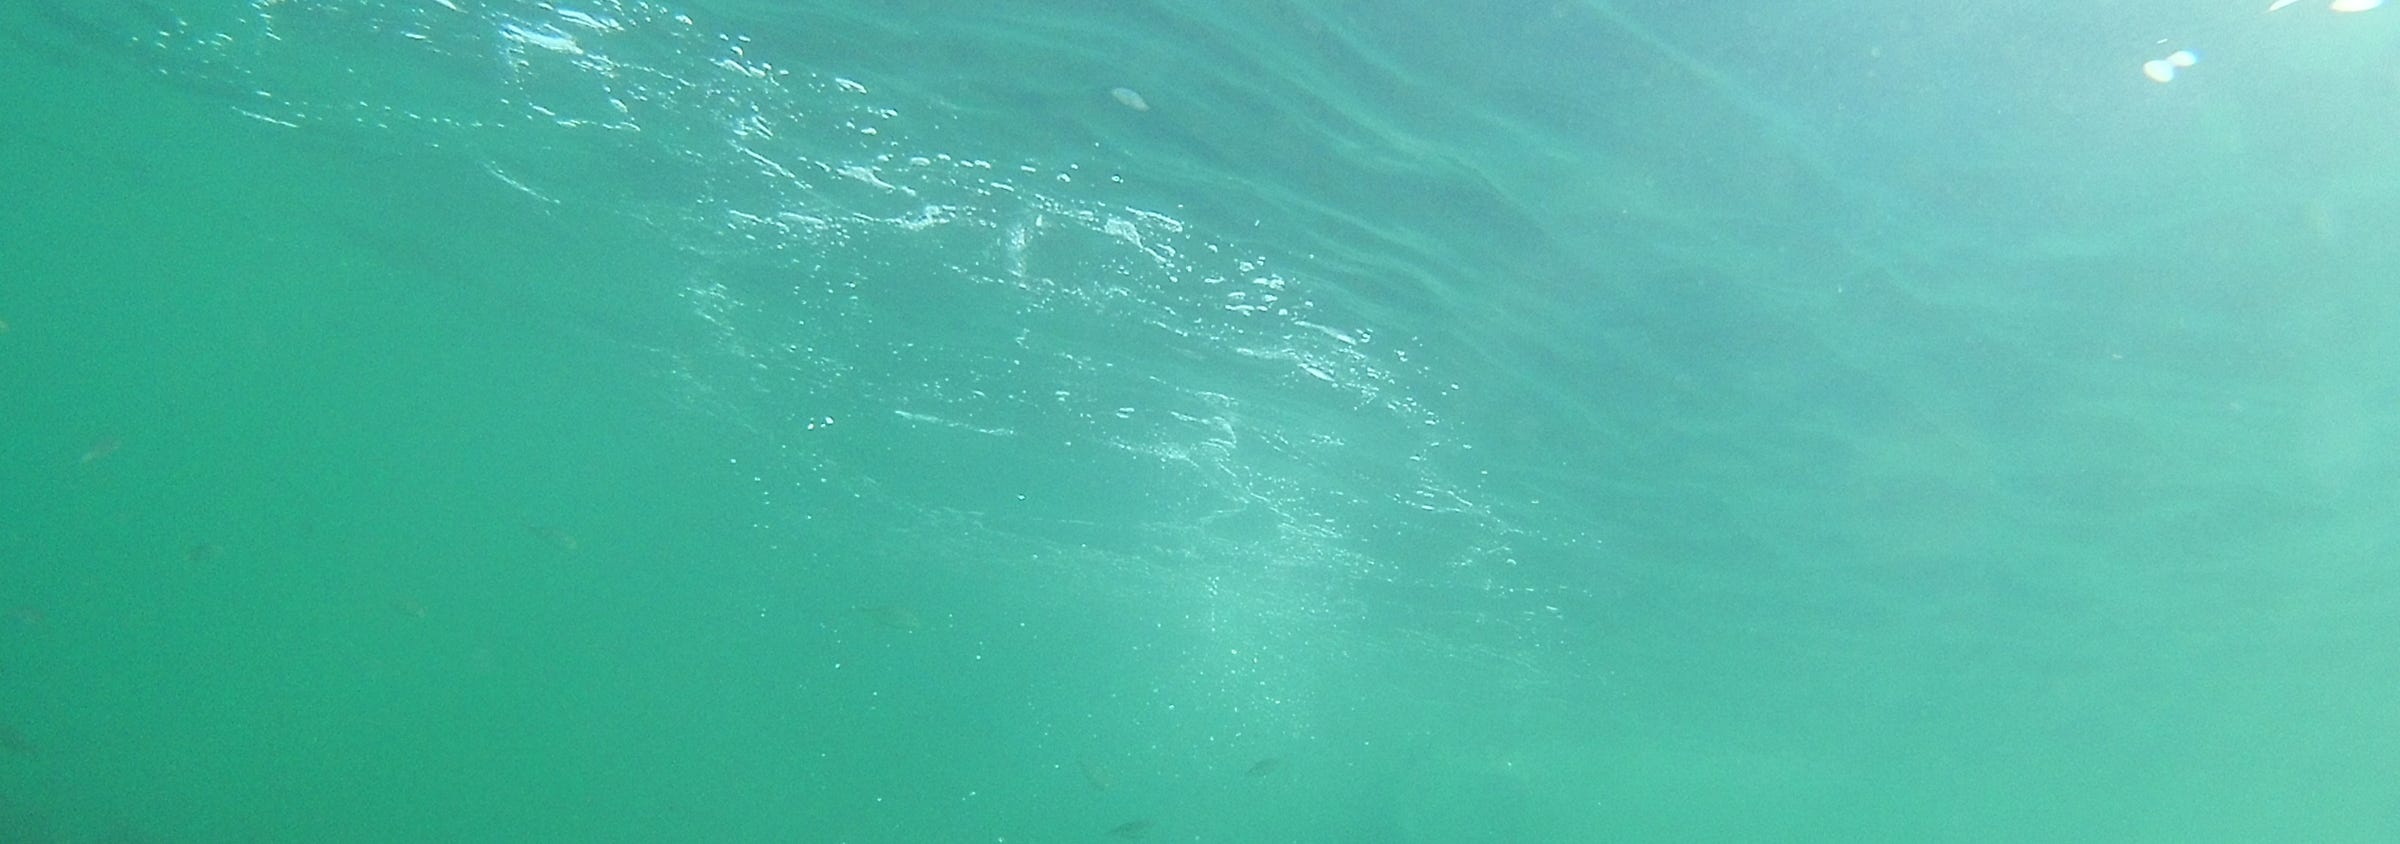 sea green water